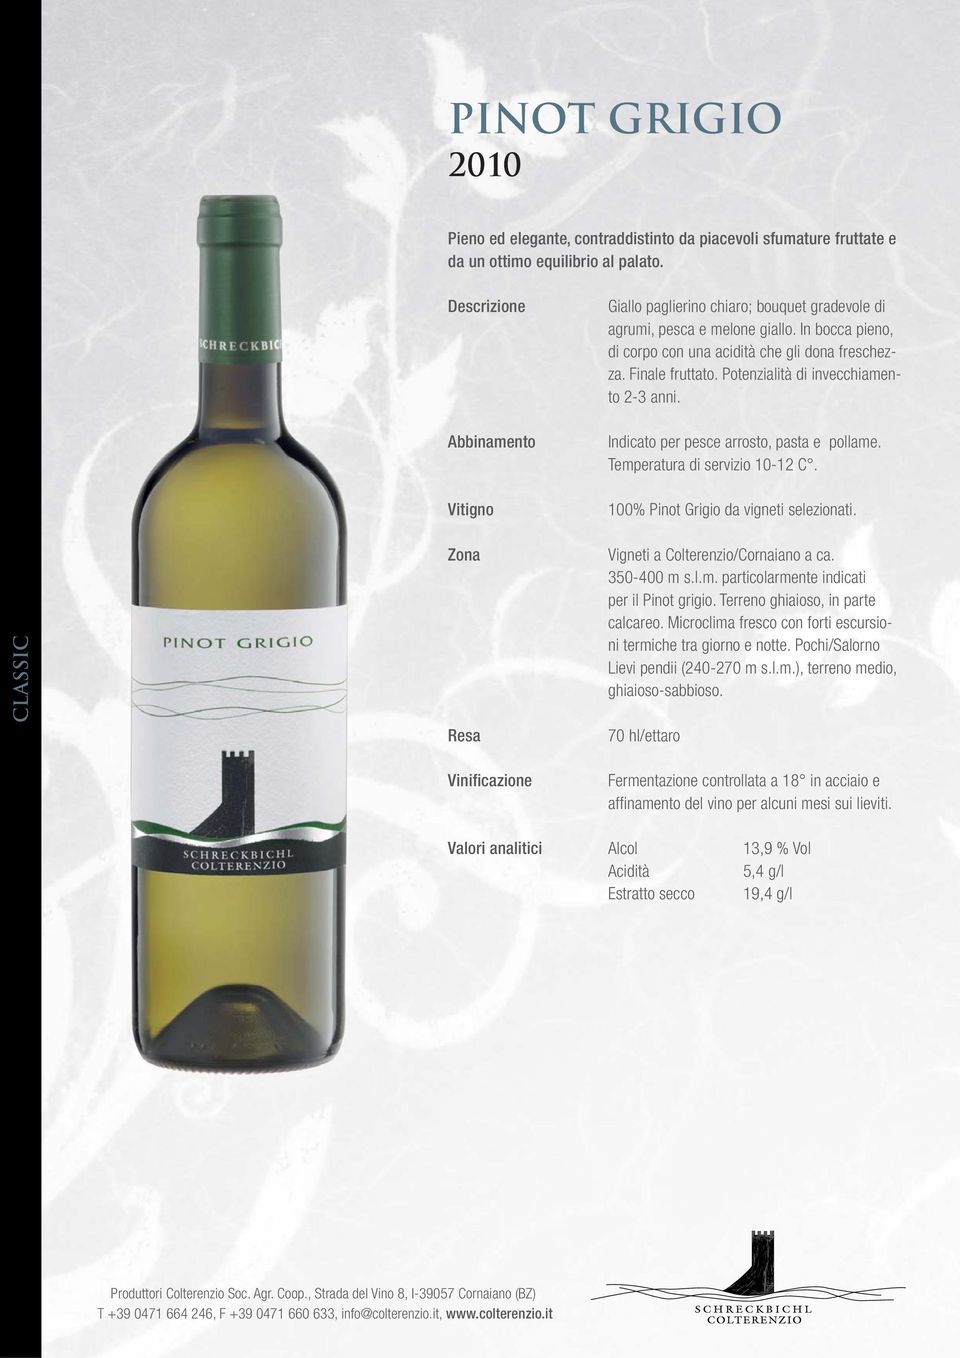 Temperatura di servizio 10-12 C. 100% Pinot Grigio da vigneti selezionati. Vigneti a Colterenzio/Cornaiano a ca. 350-400 m s.l.m. particolarmente indicati per il Pinot grigio.